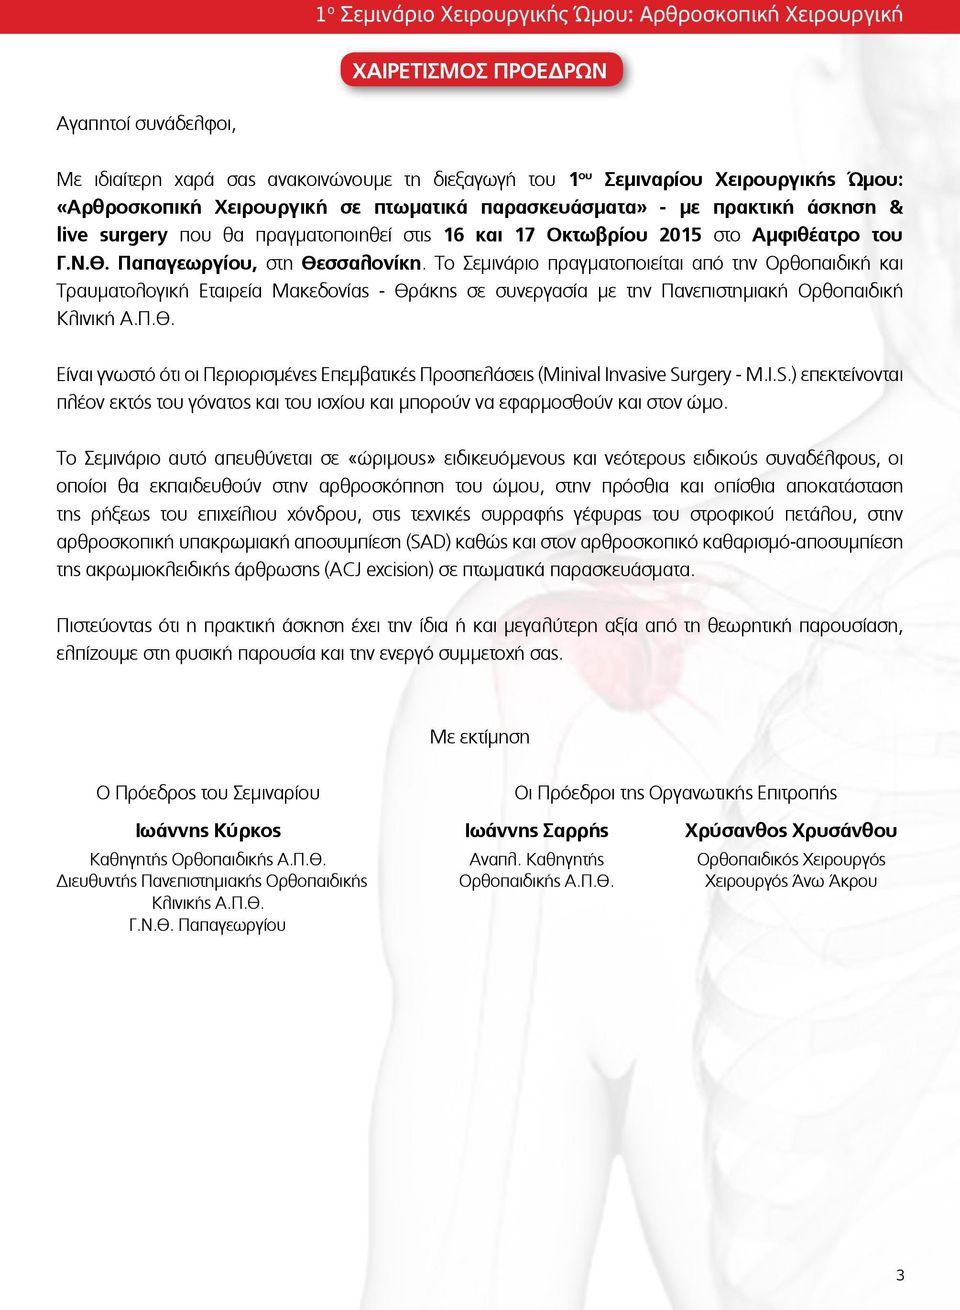 Το Σεμινάριο πραγματοποιείται από την Ορθοπαιδική και Τραυματολογική Εταιρεία Μακεδονίας - Θράκης σε συνεργασία με την Πανεπιστημιακή Ορθοπαιδική Κλινική Α.Π.Θ. Είναι γνωστό ότι οι Περιορισμένες Επεμβατικές Προσπελάσεις (Minival Invasive Surgery - M.